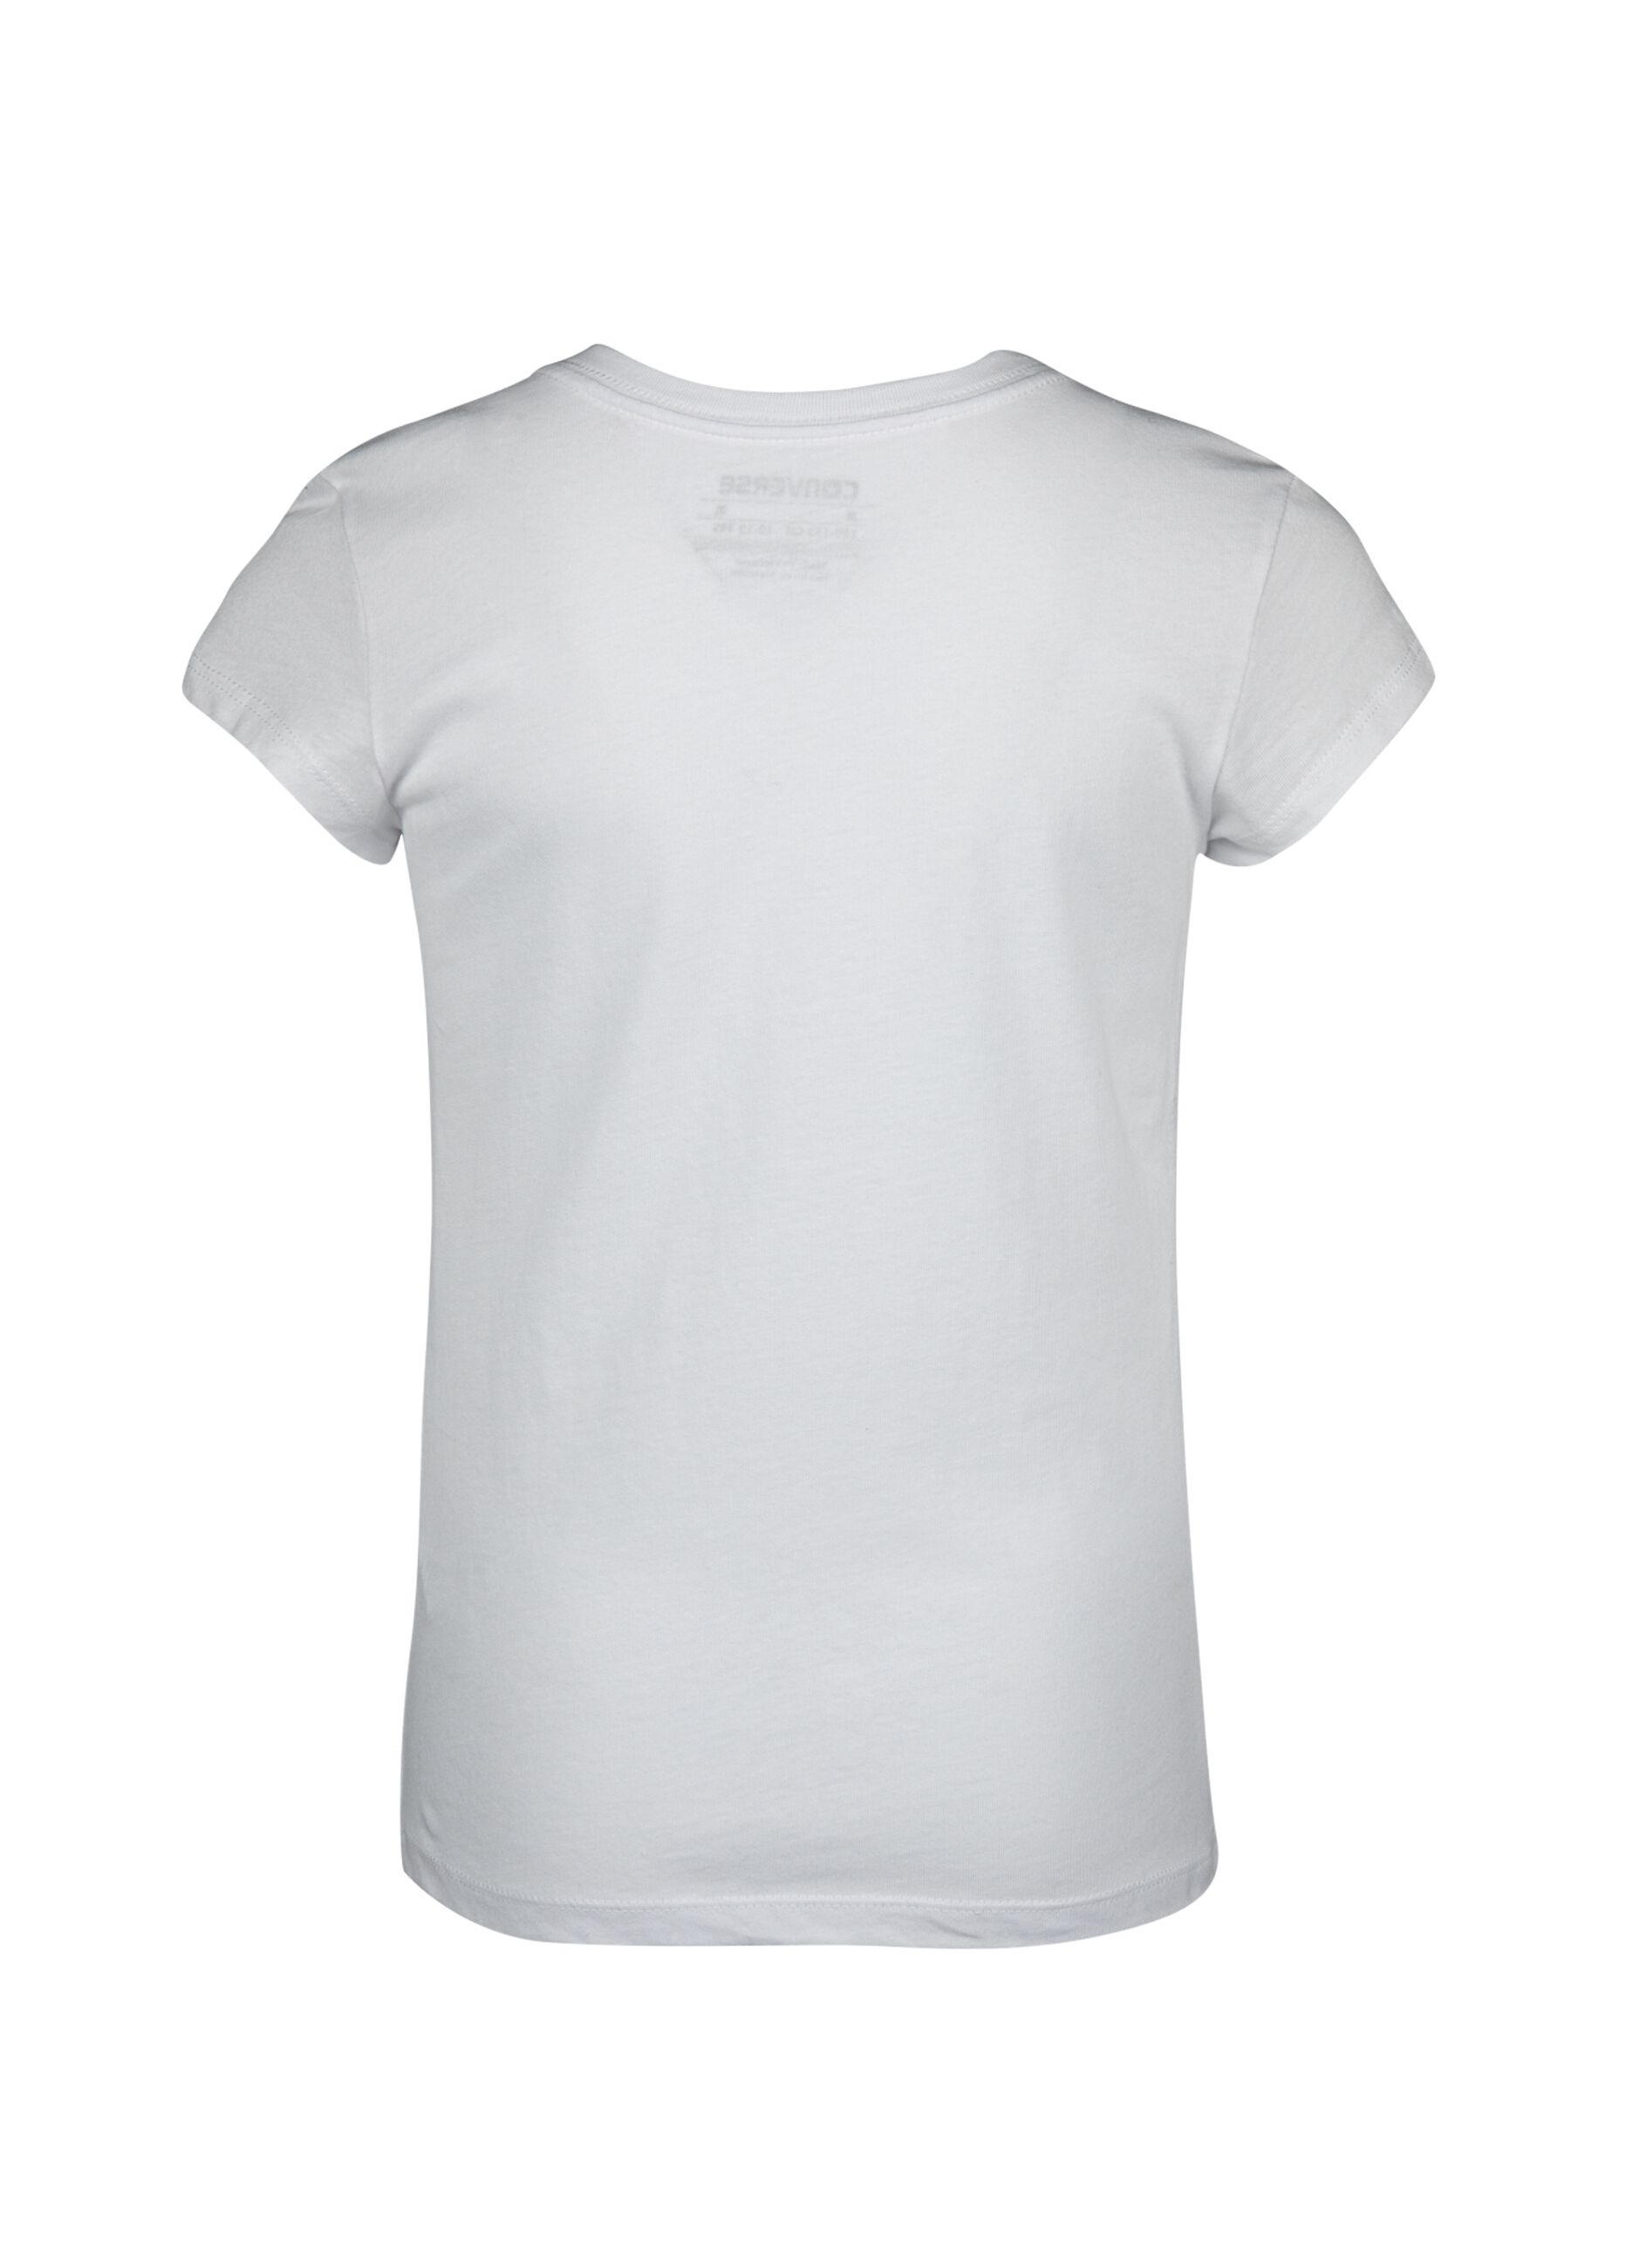 Camiseta slim fit logo Chuck Patch de purpurina estampado